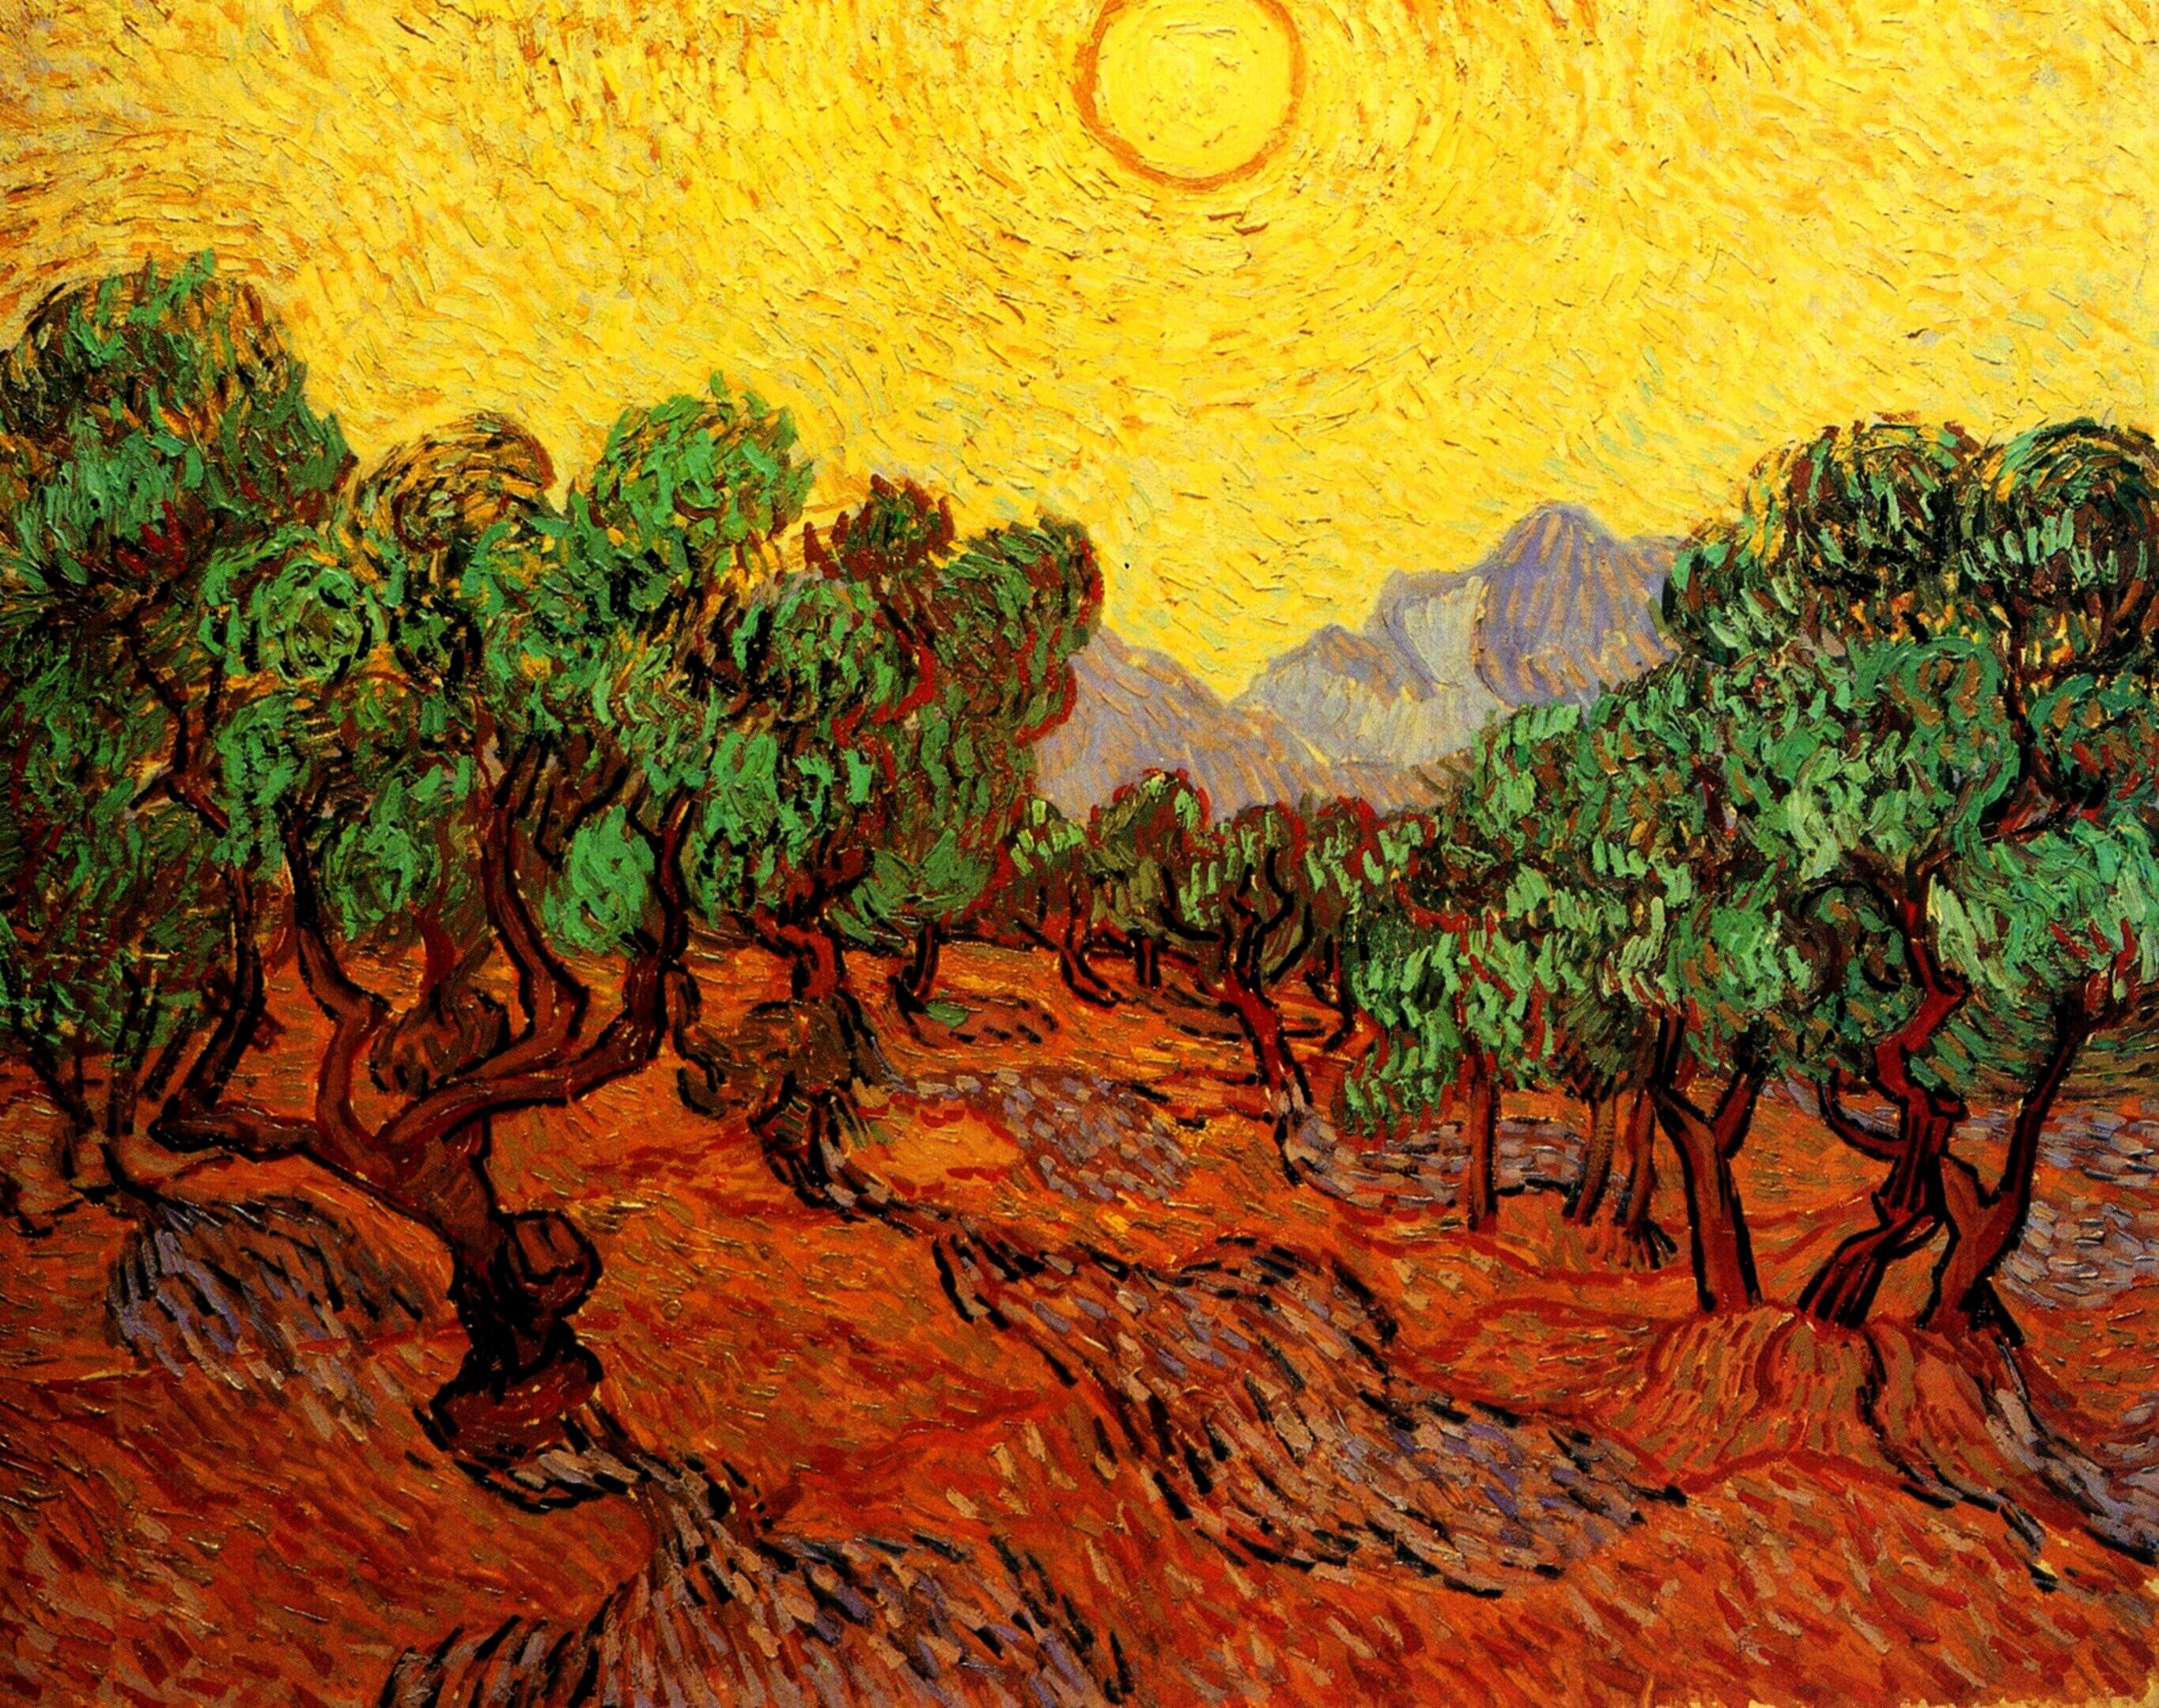  Ван Гог Оливковые деревья и желтое небо с солнцем 